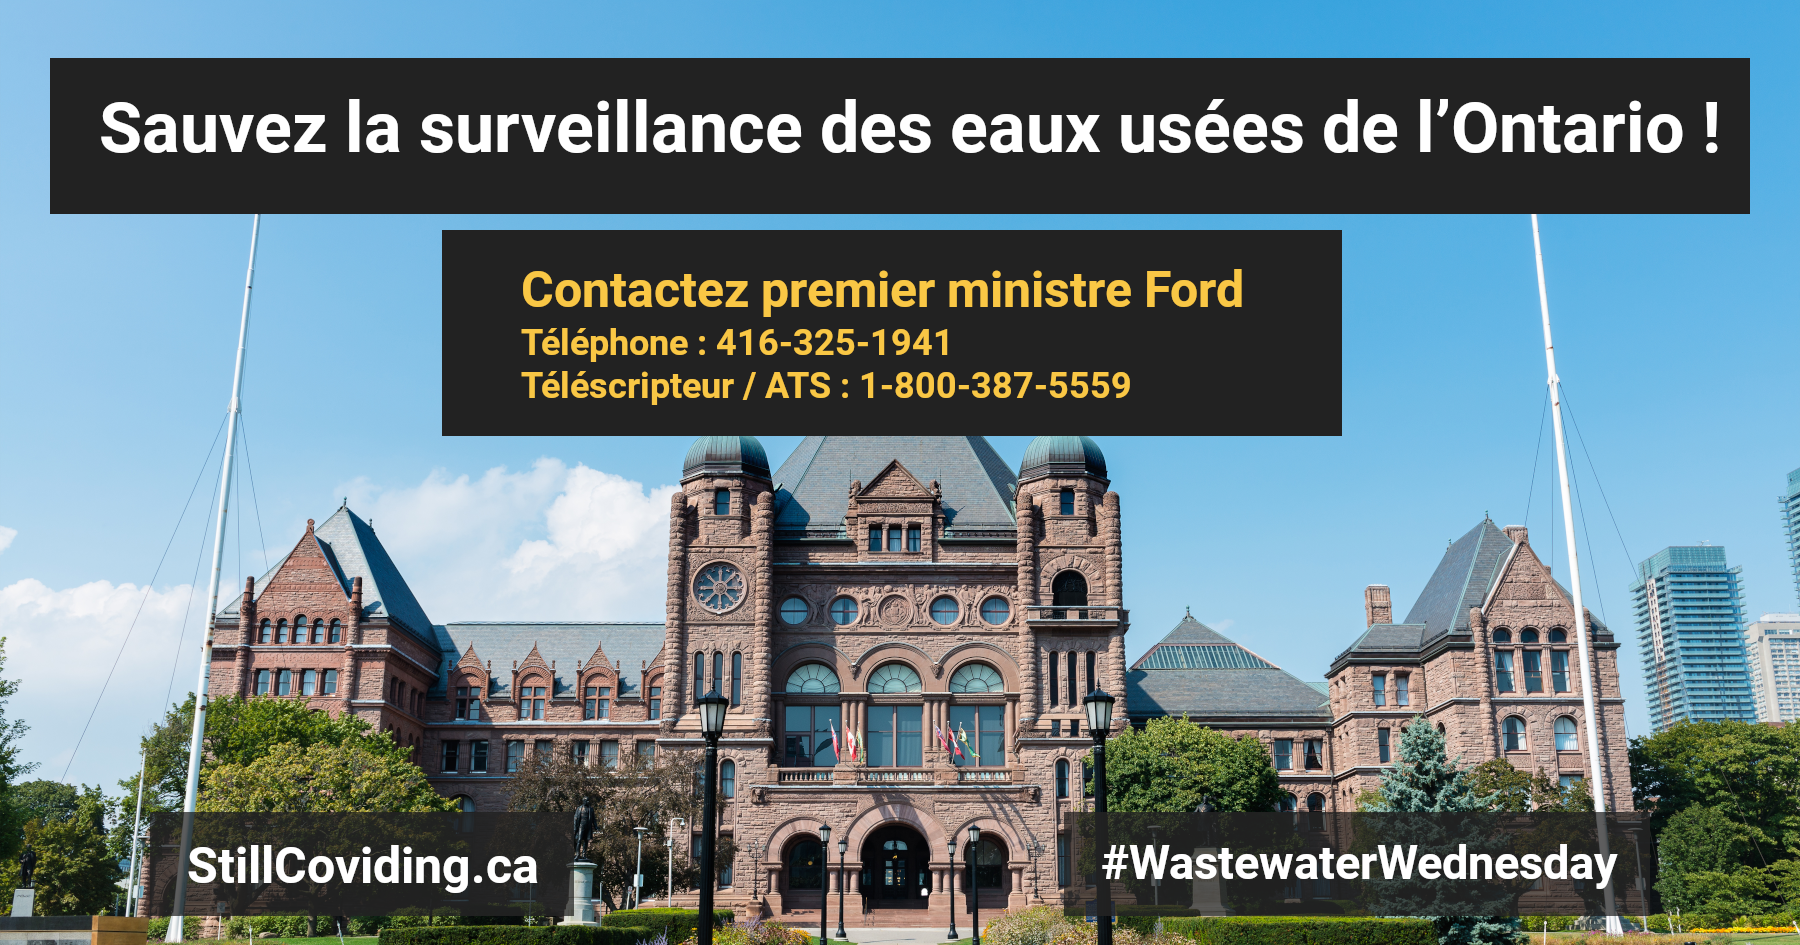 Photo de l’édifice de l’Assemblée législative de l’Ontario, de la pelouse verte et des arbres environnants. C’est une journée ensoleillée et le ciel est bleu avec quelques nuages. Texte : Sauvez la surveillance des eaux usées de l’Ontario ! Appelez le prime ministre Ford Téléphone : 416-325-1941 Téléscripteur / ATS : 1-800-387-5559 StillCOVIDing.ca #WastewaterWednesday